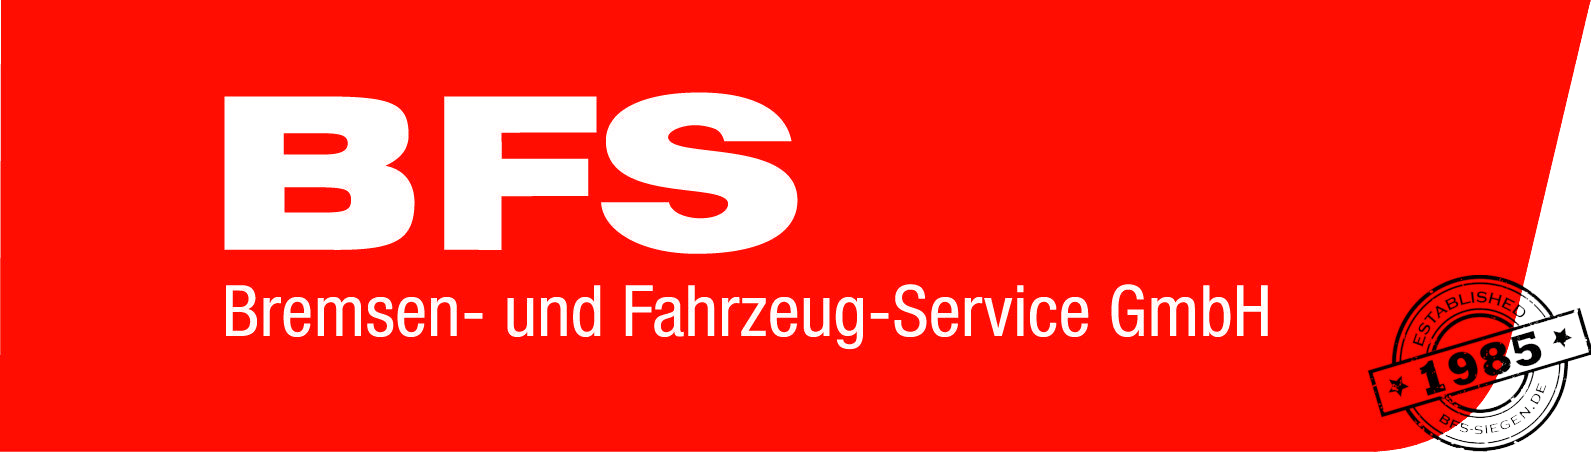 BFS Bremsen- und Fahrzeug-Service GmbH